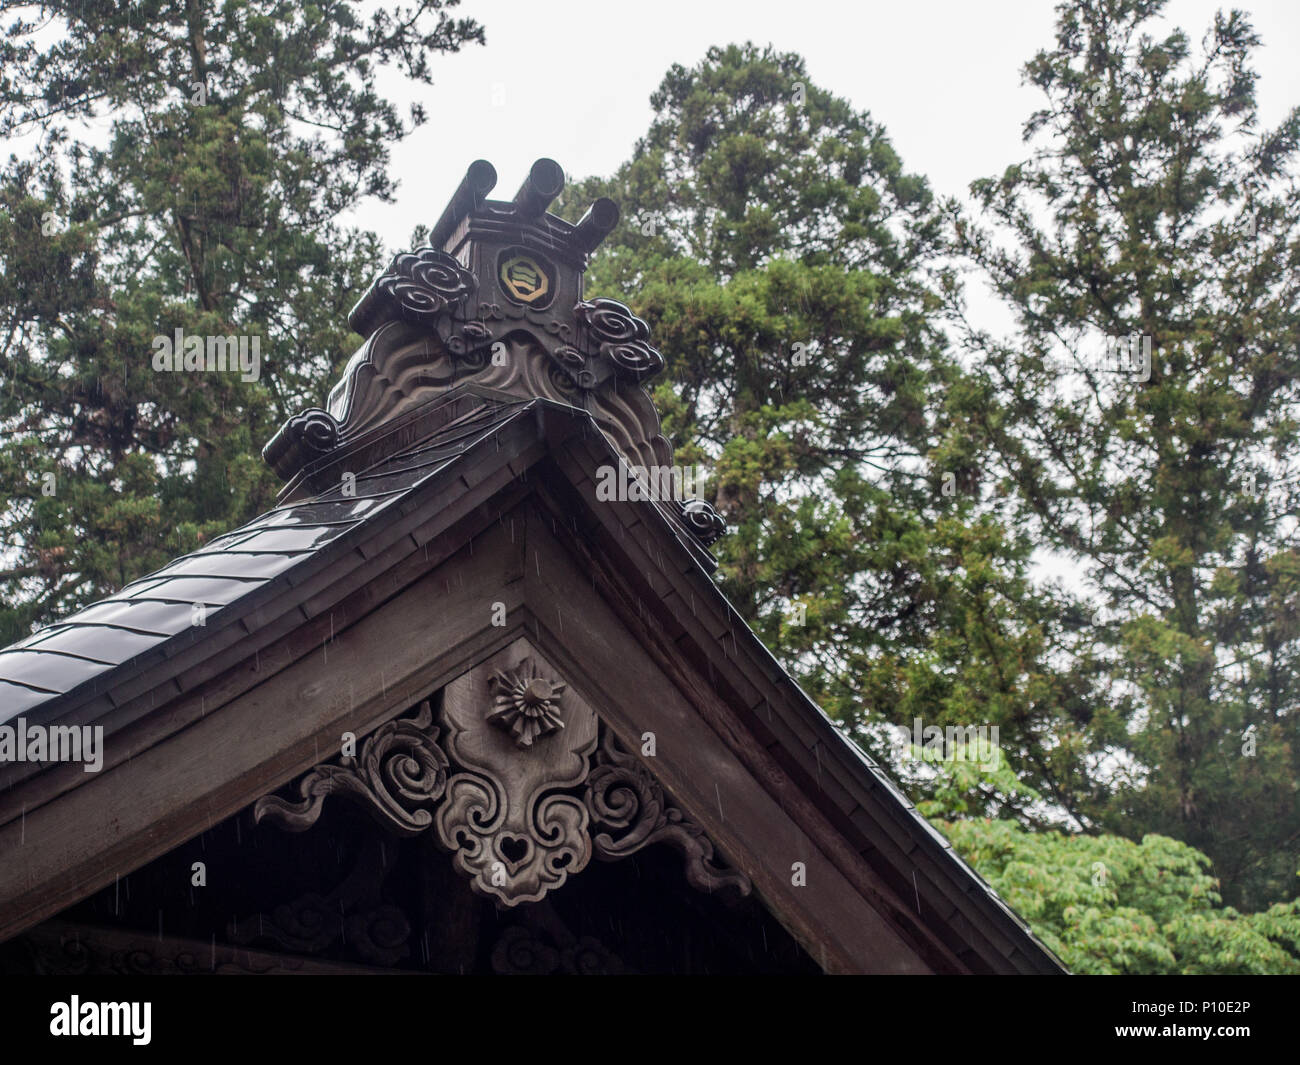 Techo a dos aguas con decoraciones, santuario sintoísta de culto japonés hall, lugar sagrado, Osaki Hachiman santuario sintoísta, Ehime, Shikoku, Japón Foto de stock